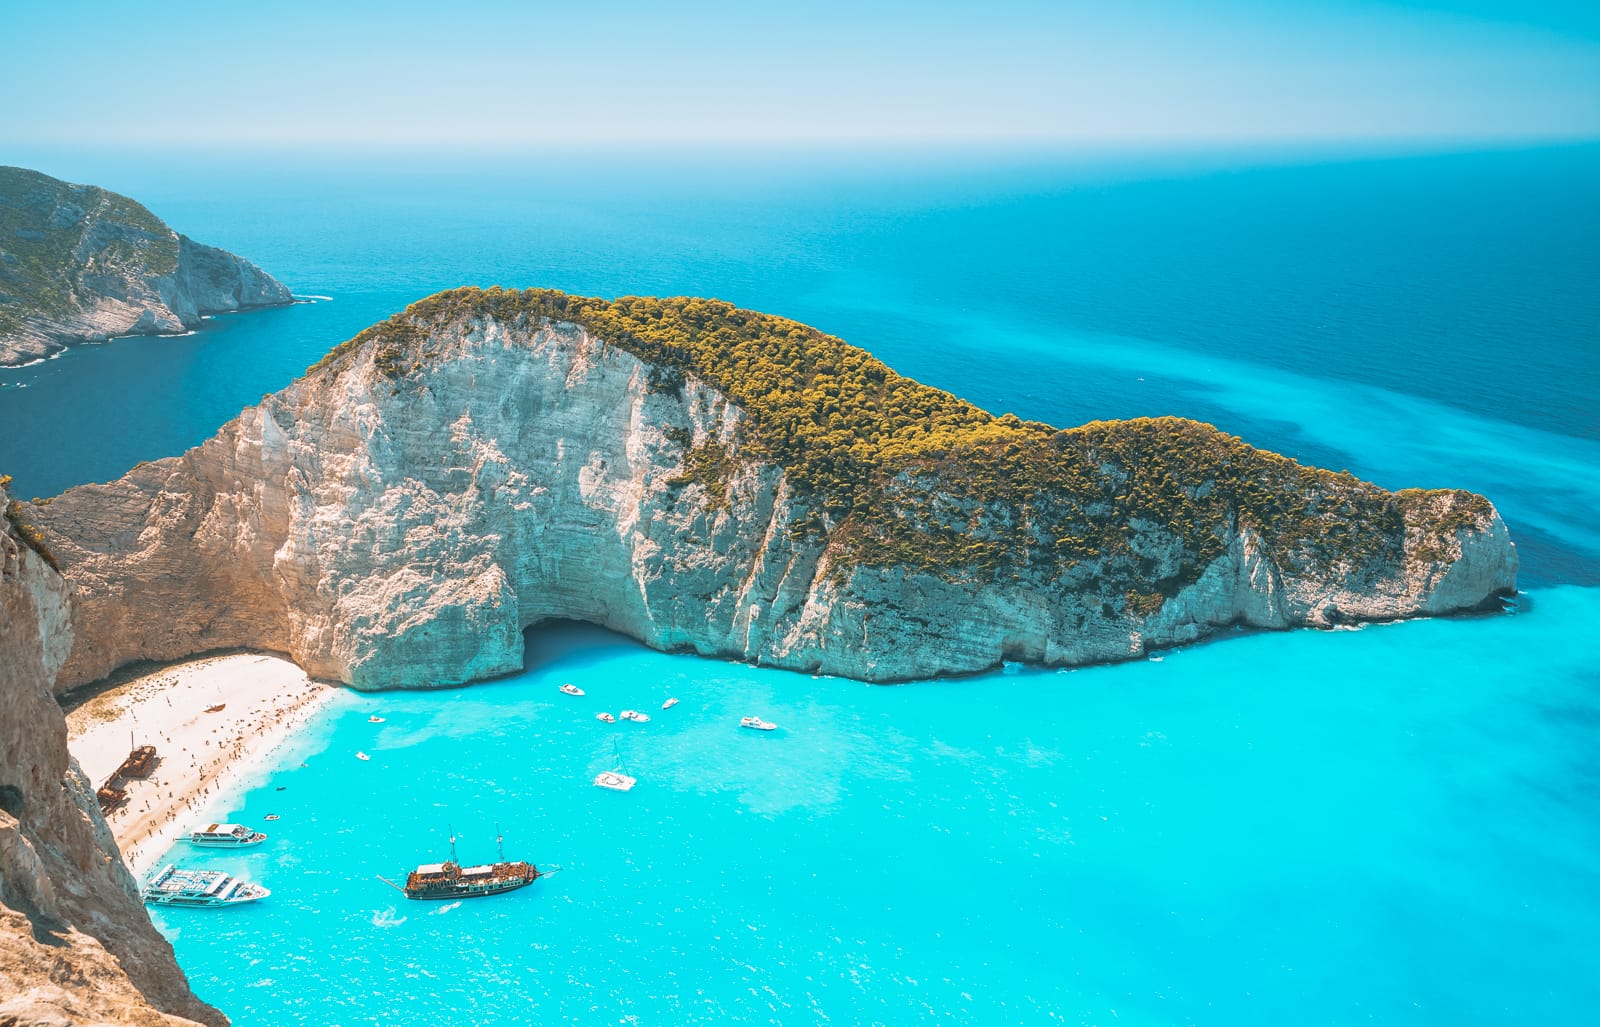 Yunan Adaları Haberleri CumCuma’da! Yunanistan’da bulunan tatil cenneti Yunan Adaları’nda tatil yapan ünlüler magazin sayfalarımızda yer alıyor.